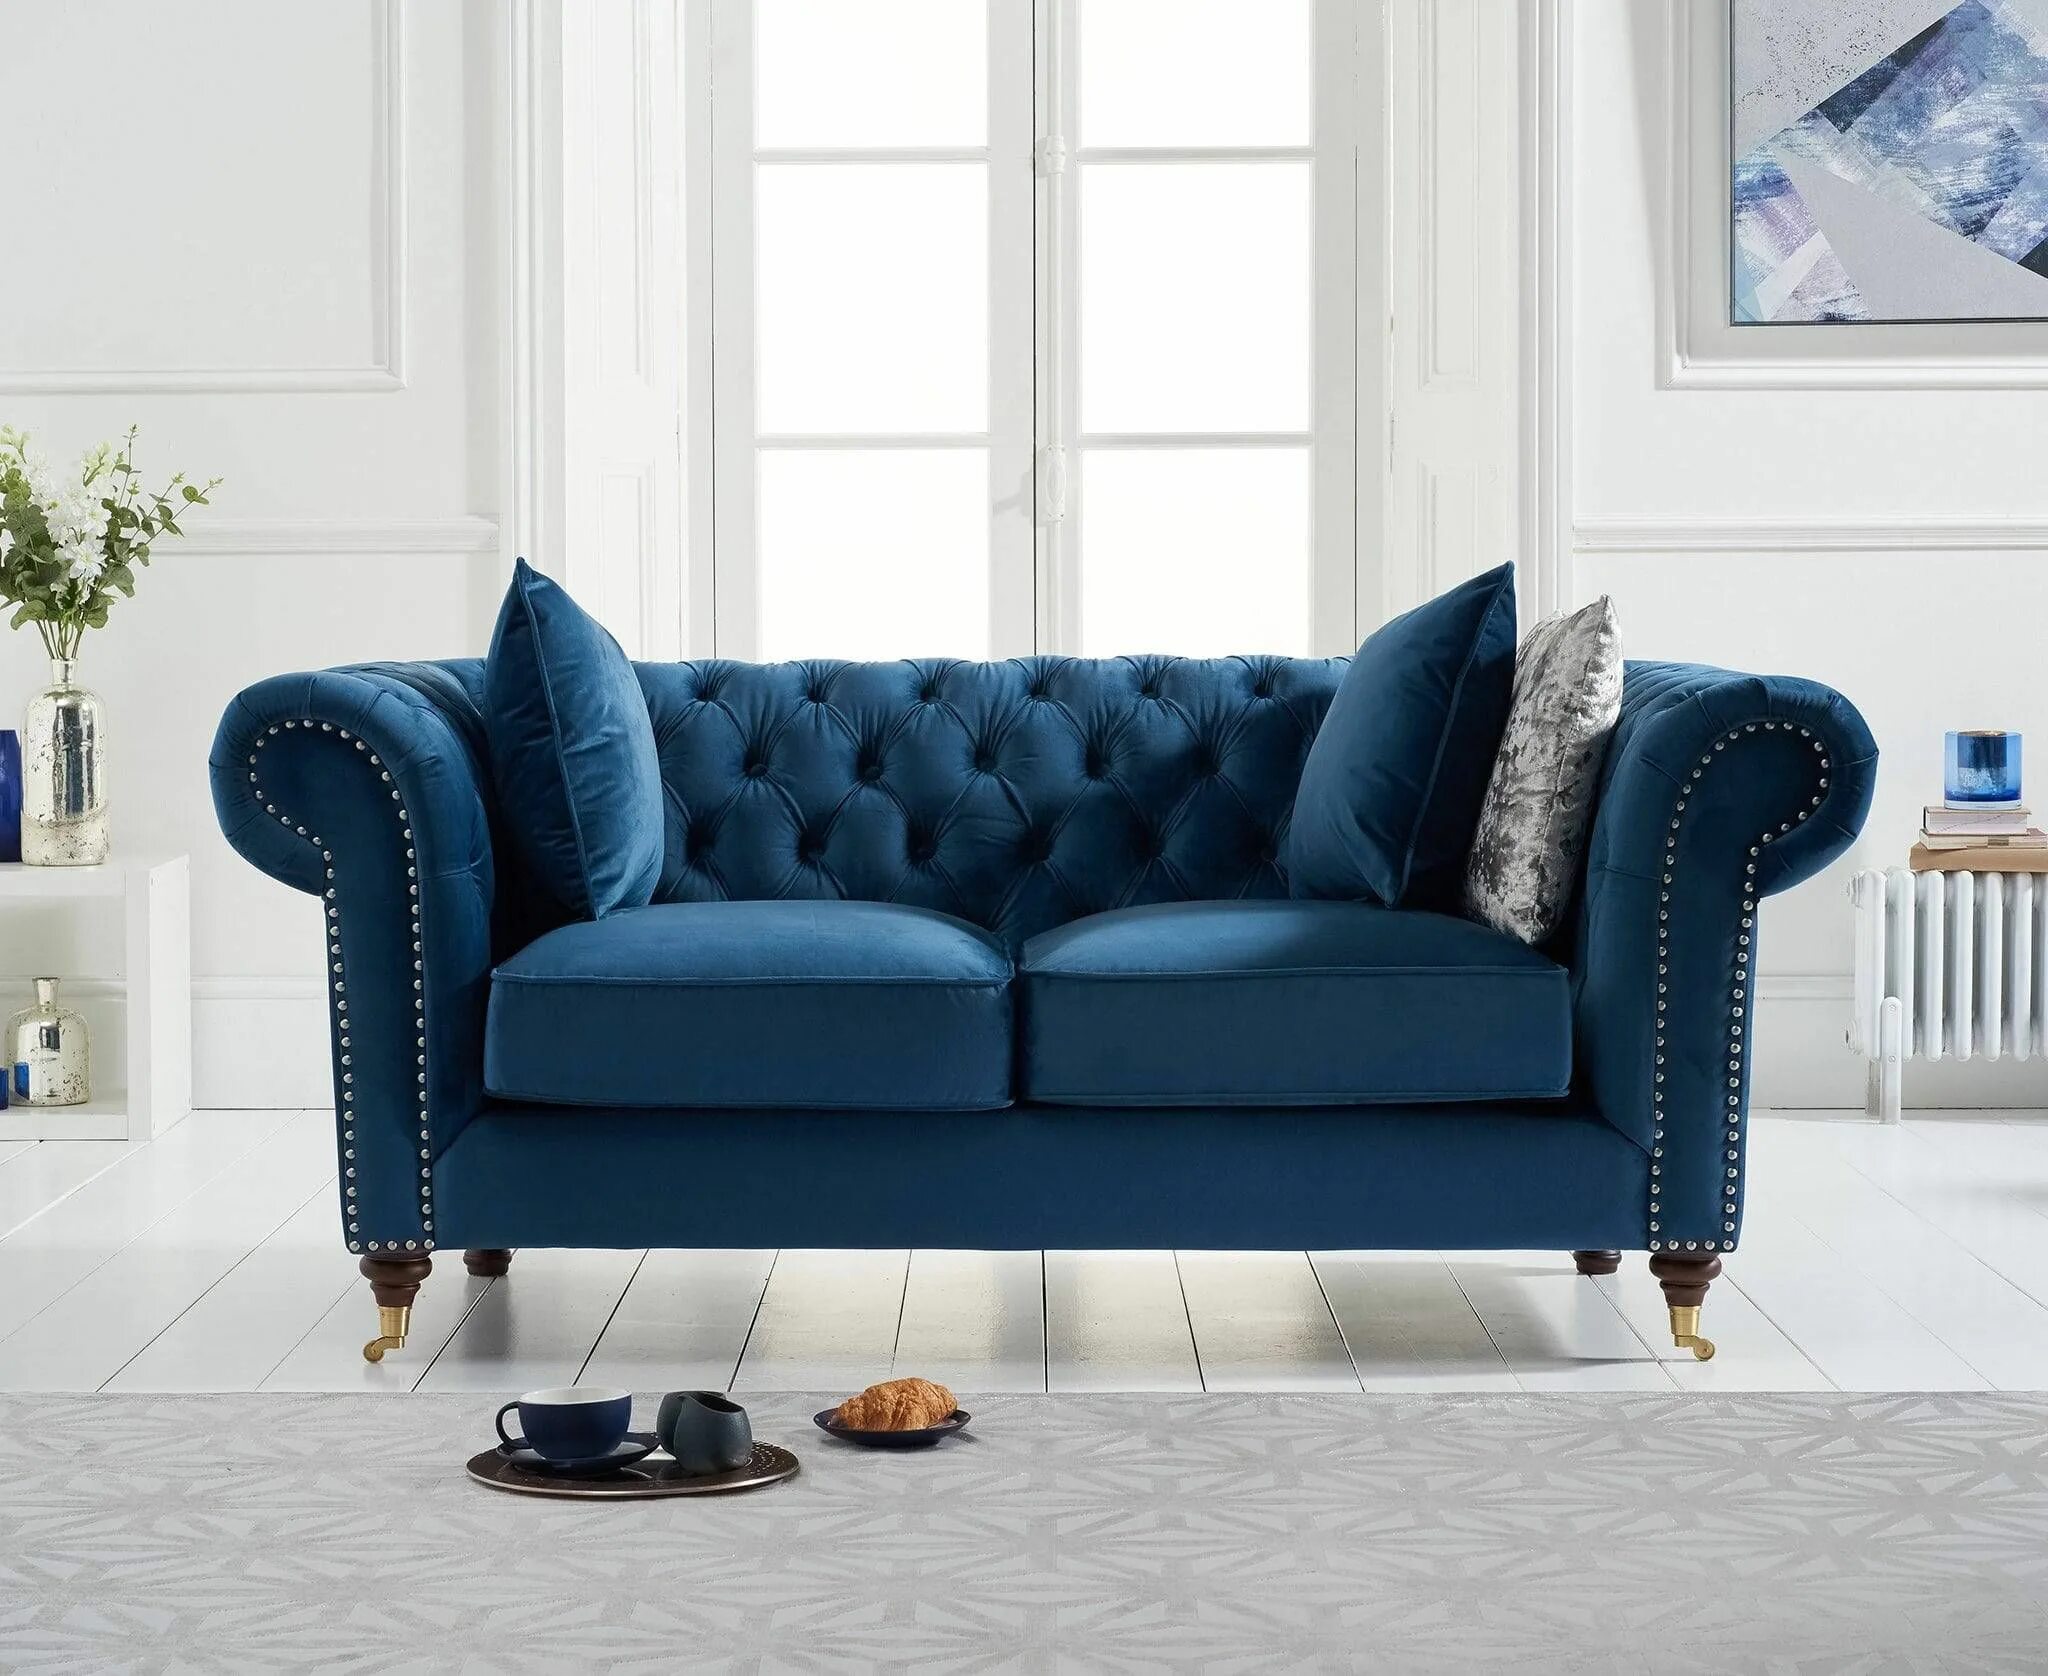 Синий диван. Кресло unico Sofa Dark Blue. Patterdale Velvet 2 Seater Sofa. Синий велюровый диван с подушками. Королевский голубой мягкий мебели.